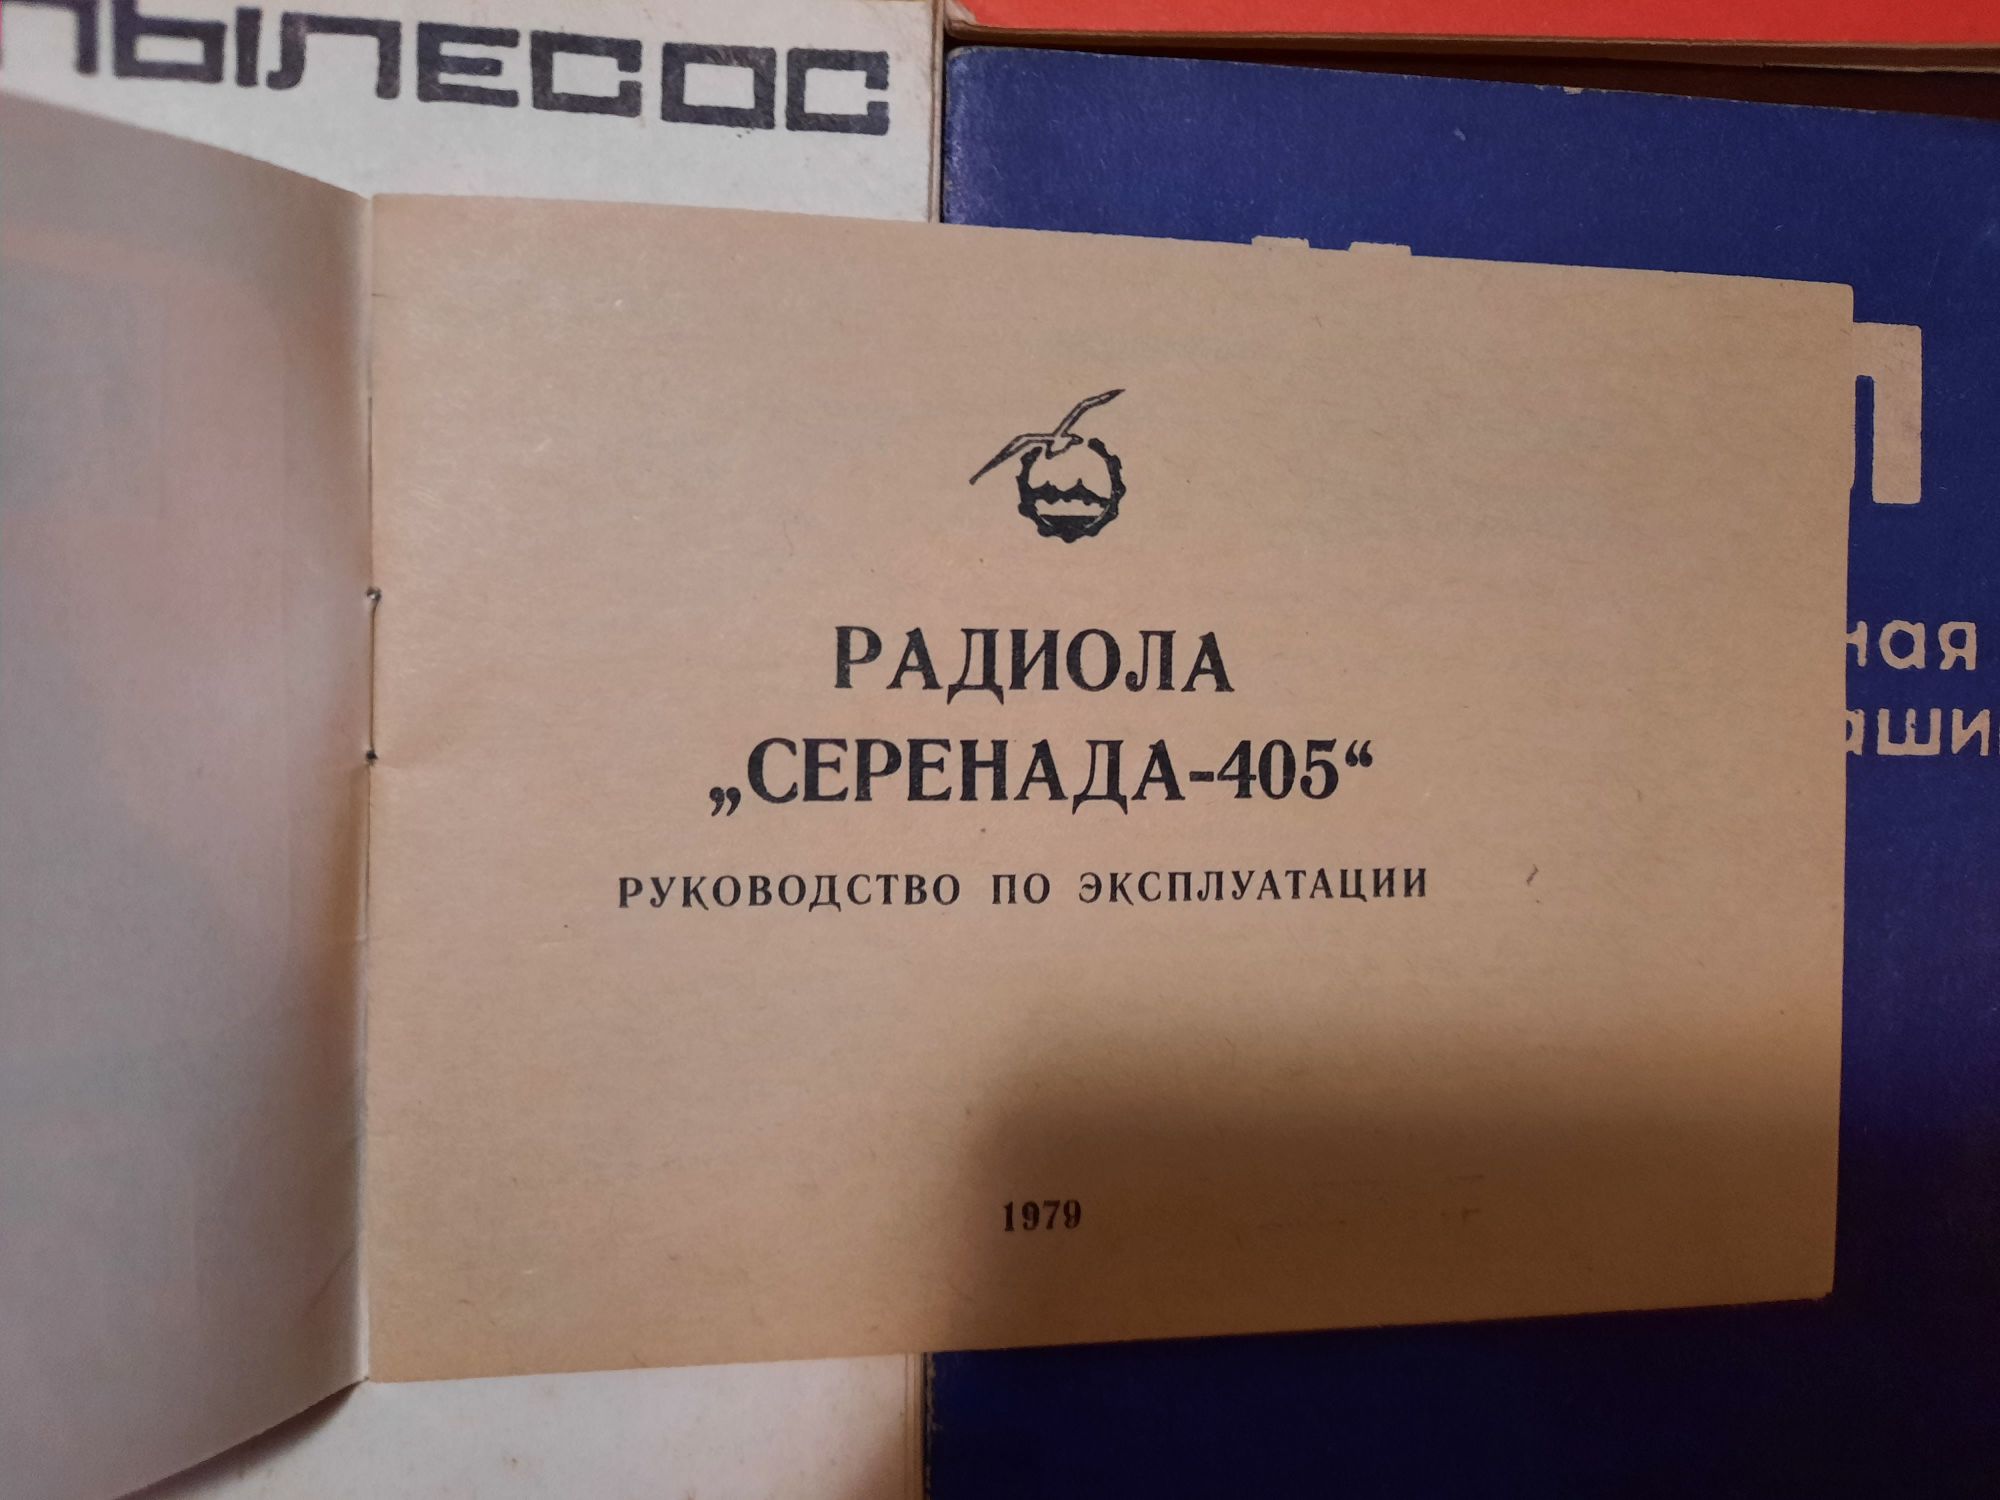 Руководство по эксплуатации (технический паспорт) техники СССР (ретро